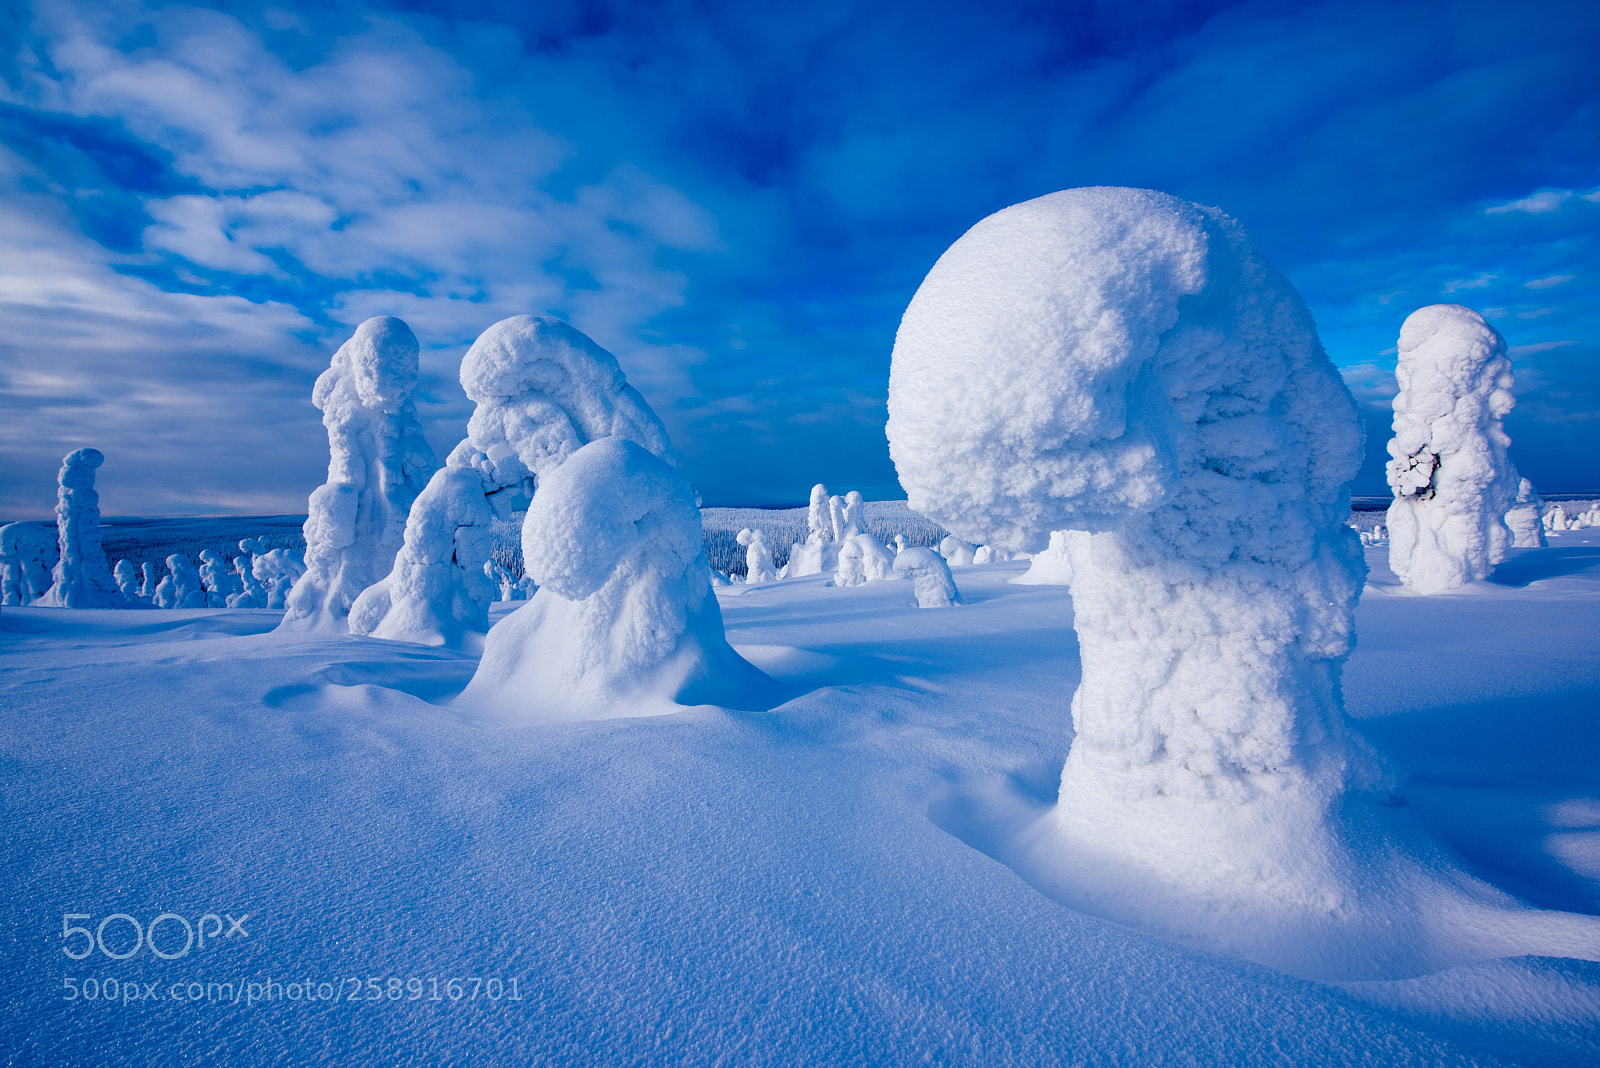 Nikon D810 sample photo. Nature's snow sculptures photography